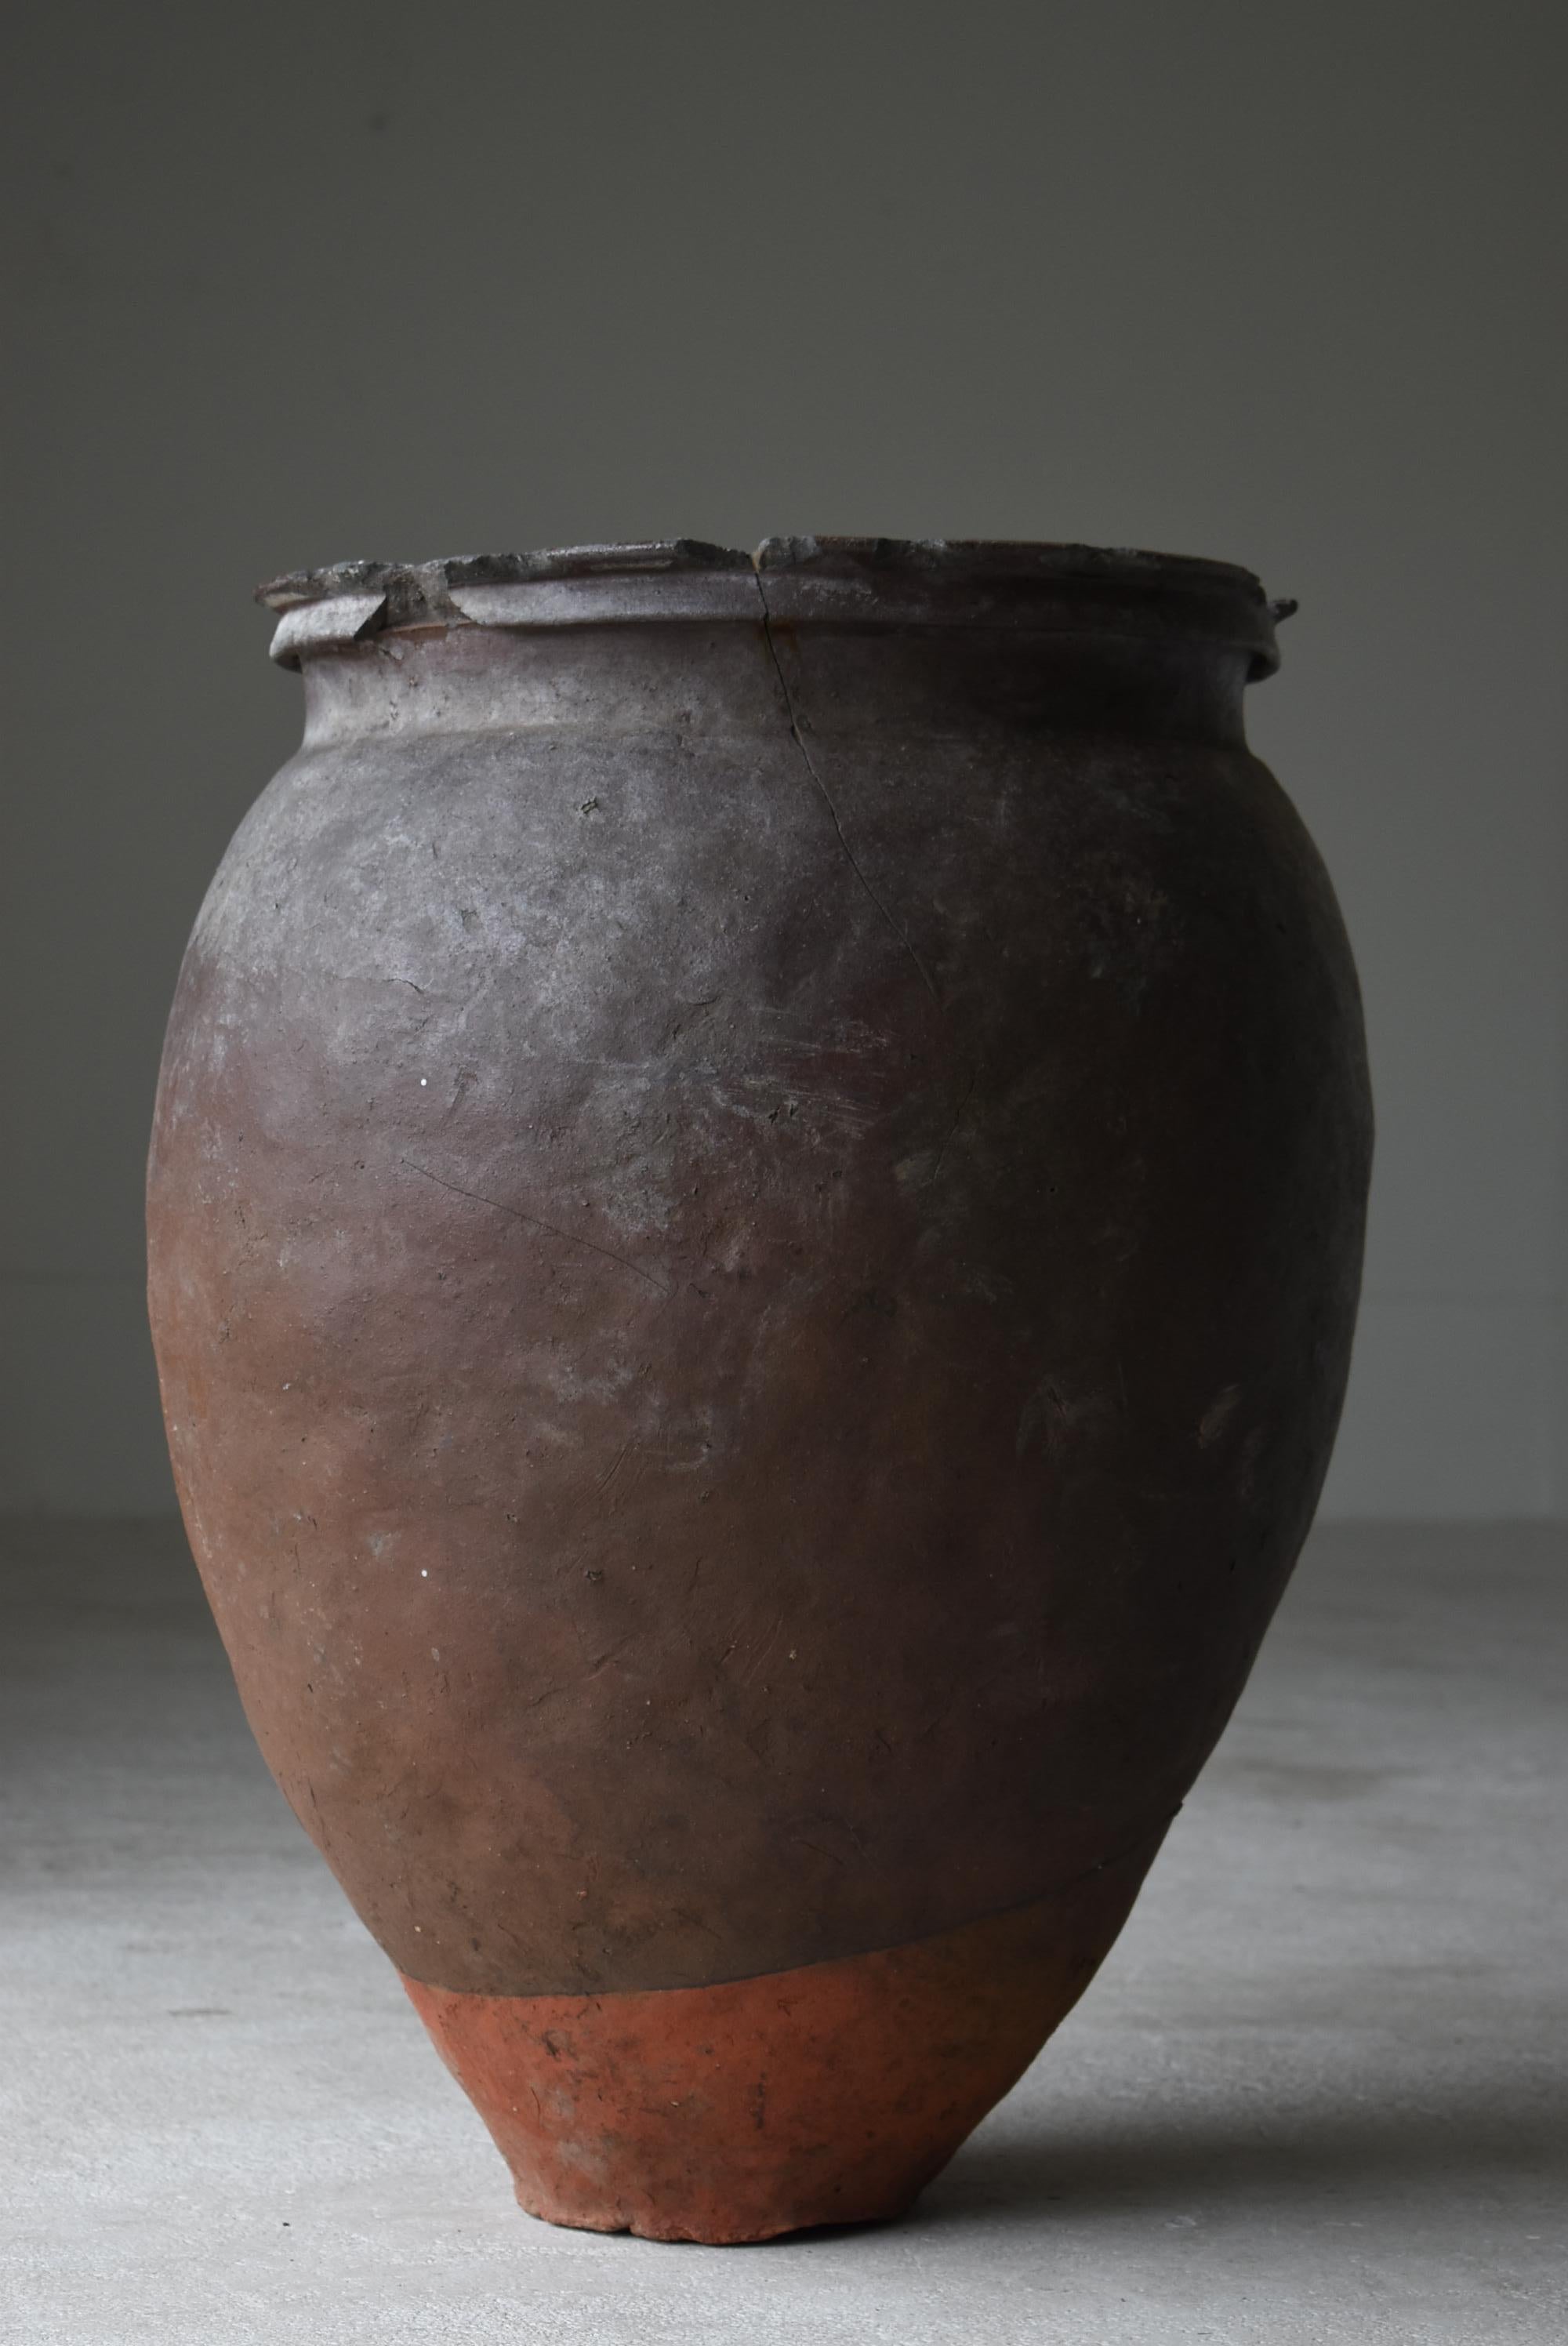 Japanese Old Pottery 1700s-1800s/Antique Flower Vase Vessel Jar Tsubo Ceramic 2